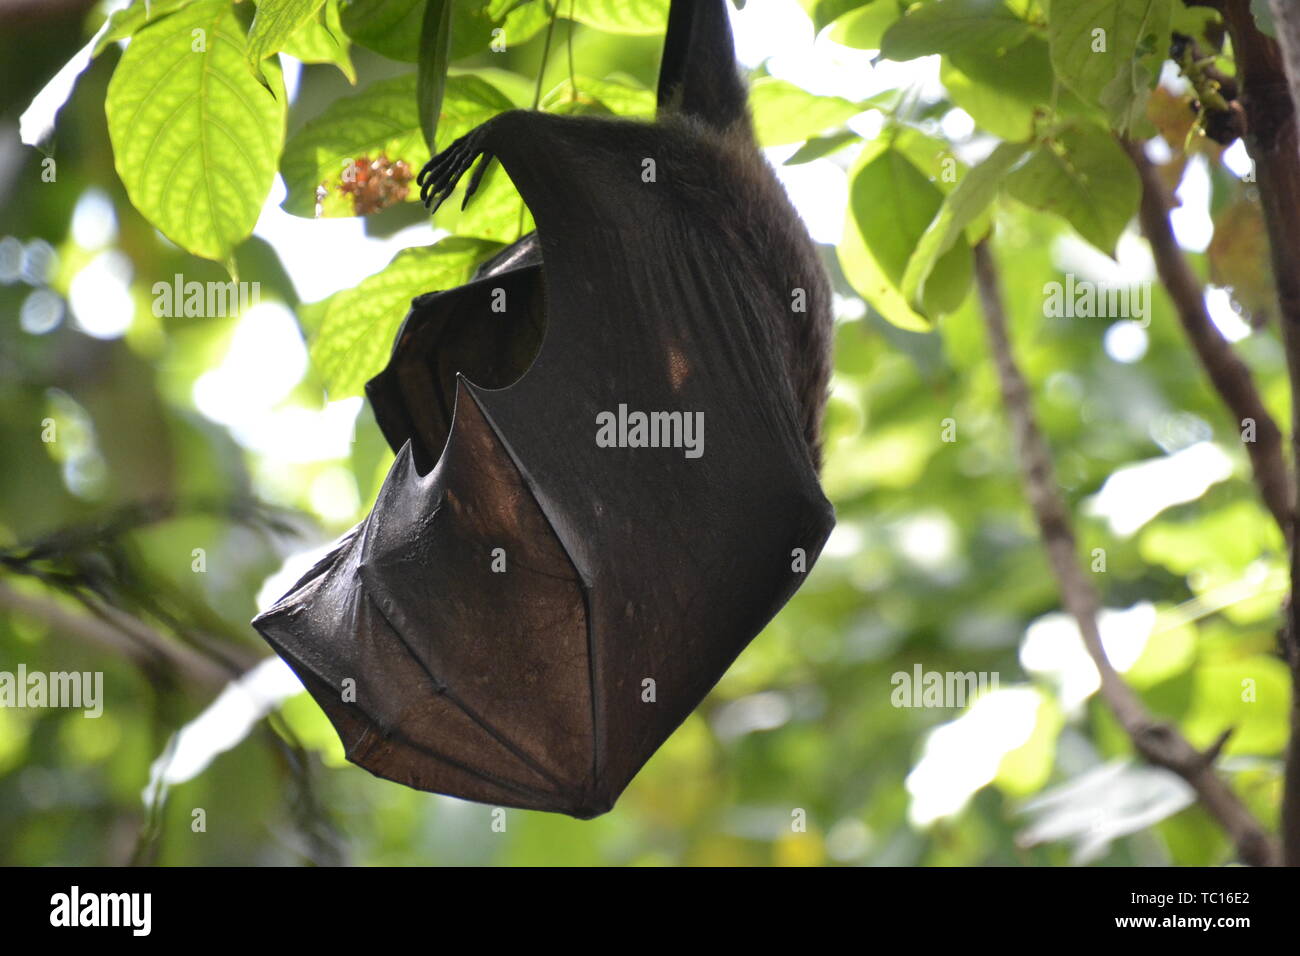 Fruit bat, London Zoo, London, England, UK Stock Photo